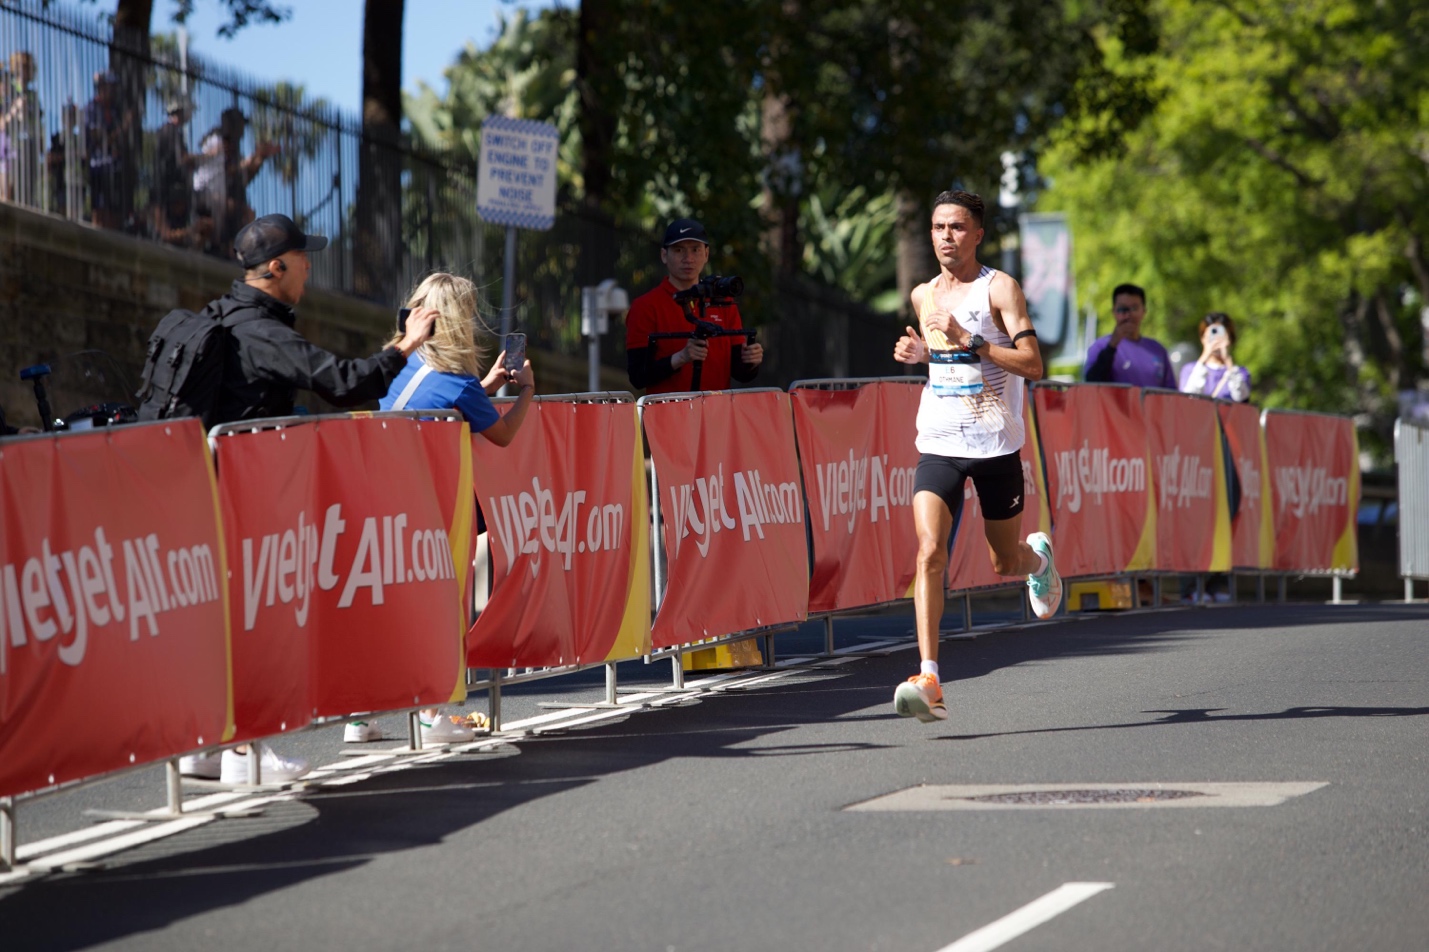 Bay đến Sydney chạy Marathon cùng Vietjet để không bỏ lỡ đường chạy đẹp nhất hành tinh - Ảnh 5.